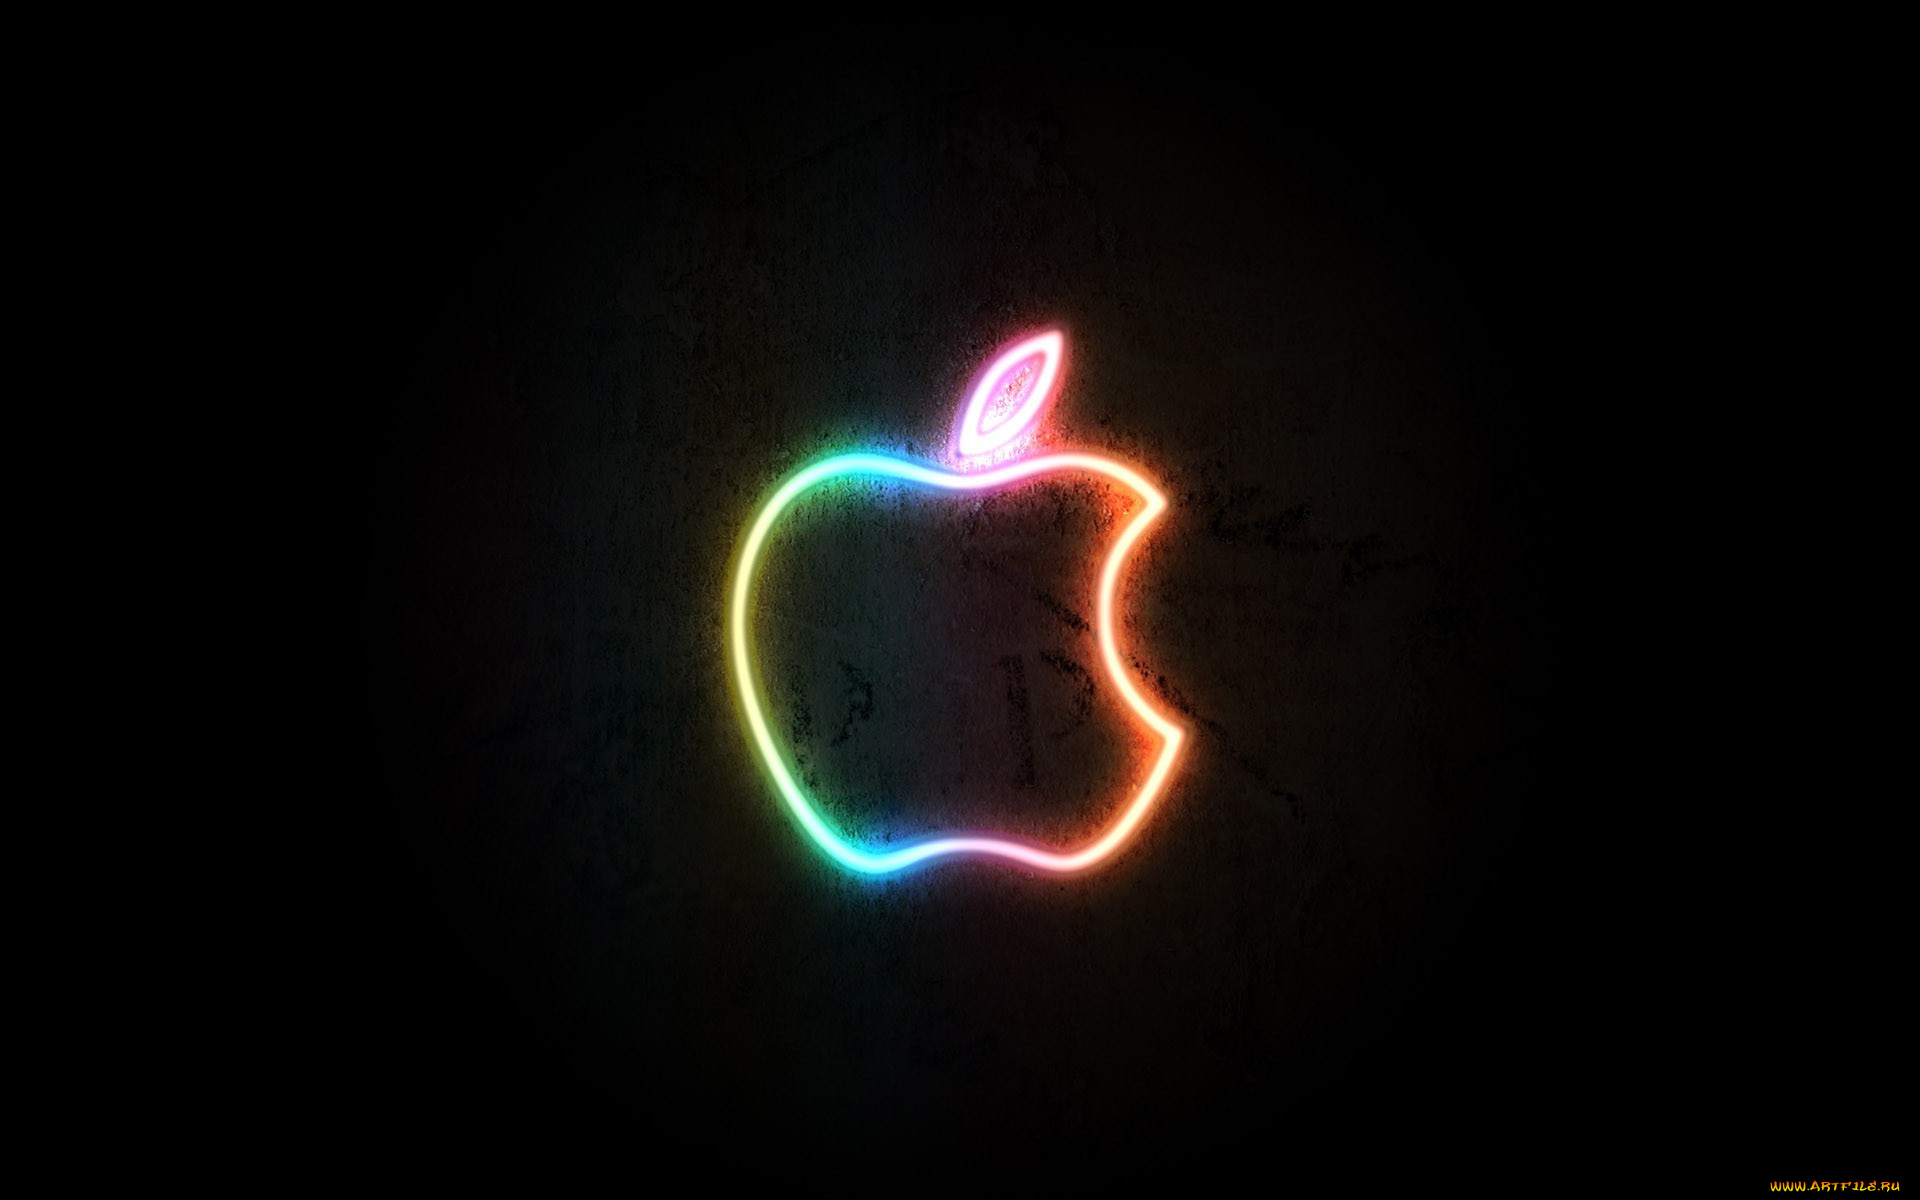 компьютеры, apple, логотип, яблоко, стена, свет, неон, черный, фон